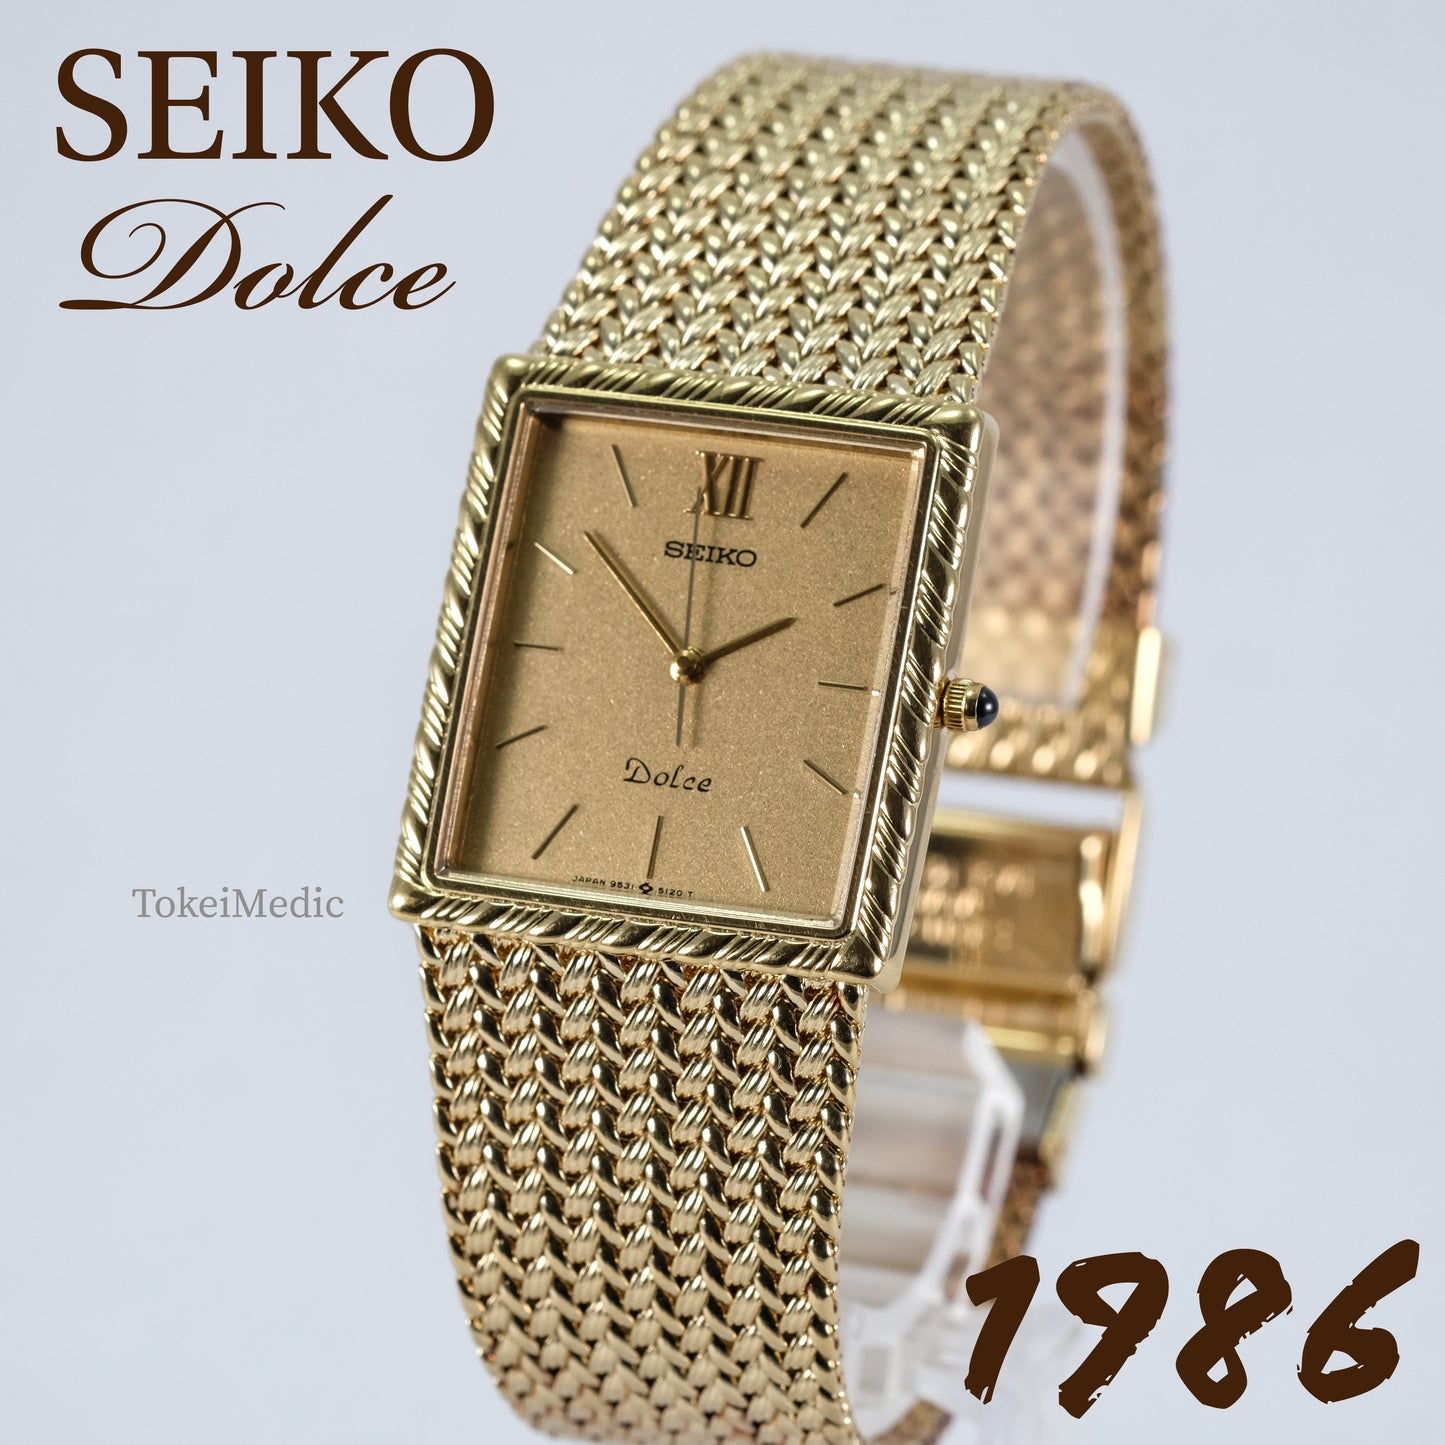 1986 Seiko Dolce 9521-5100